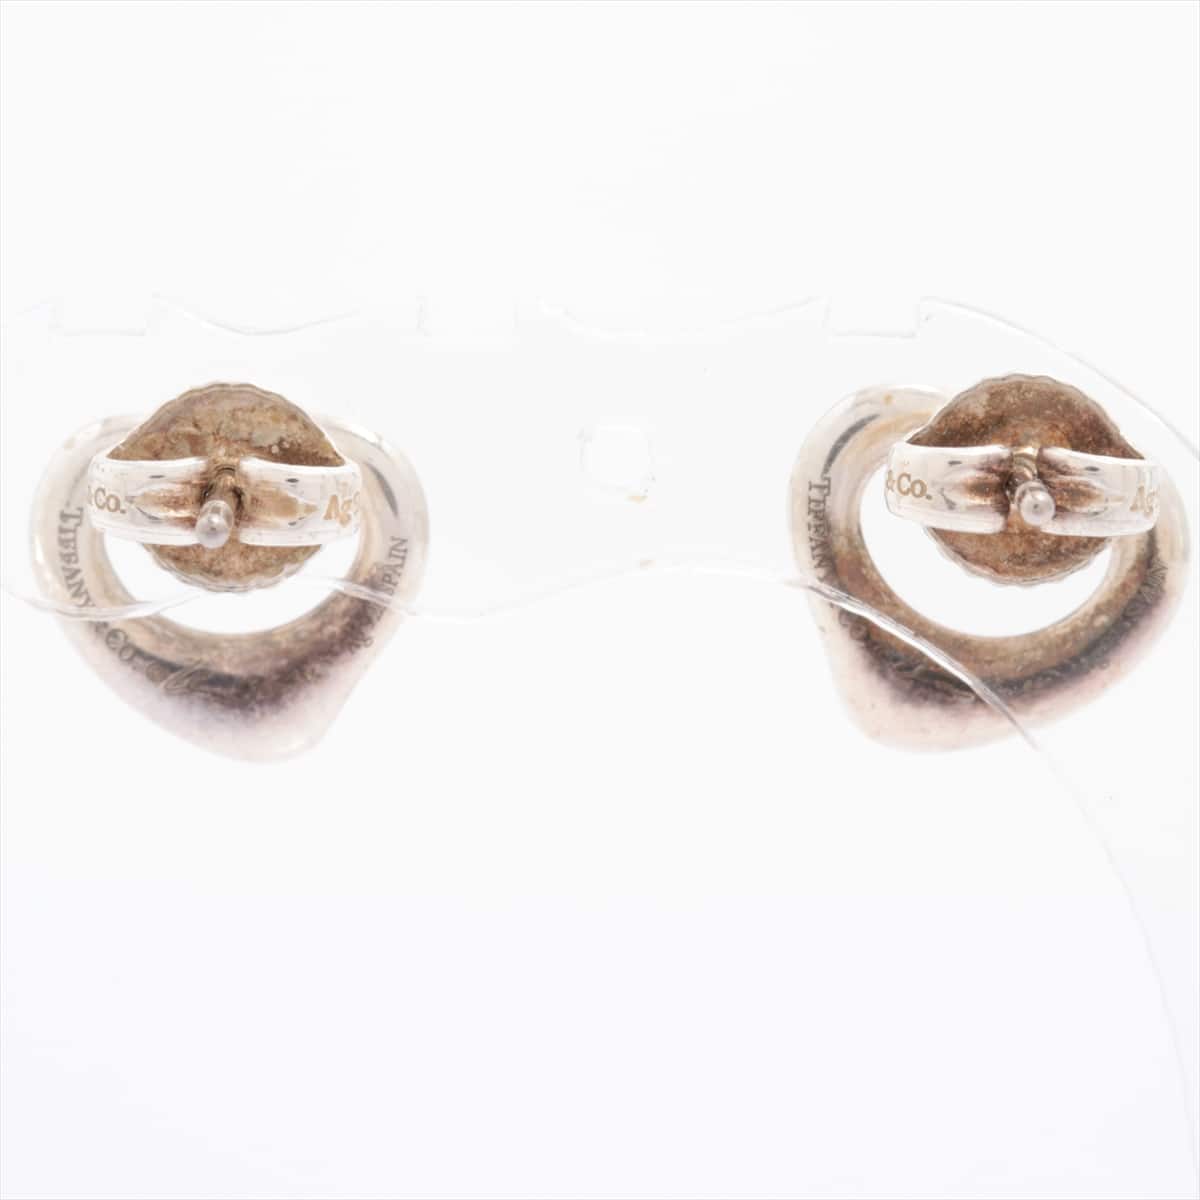 Tiffany Open Heart Piercing jewelry (for both ears) 925 2.3g Silver